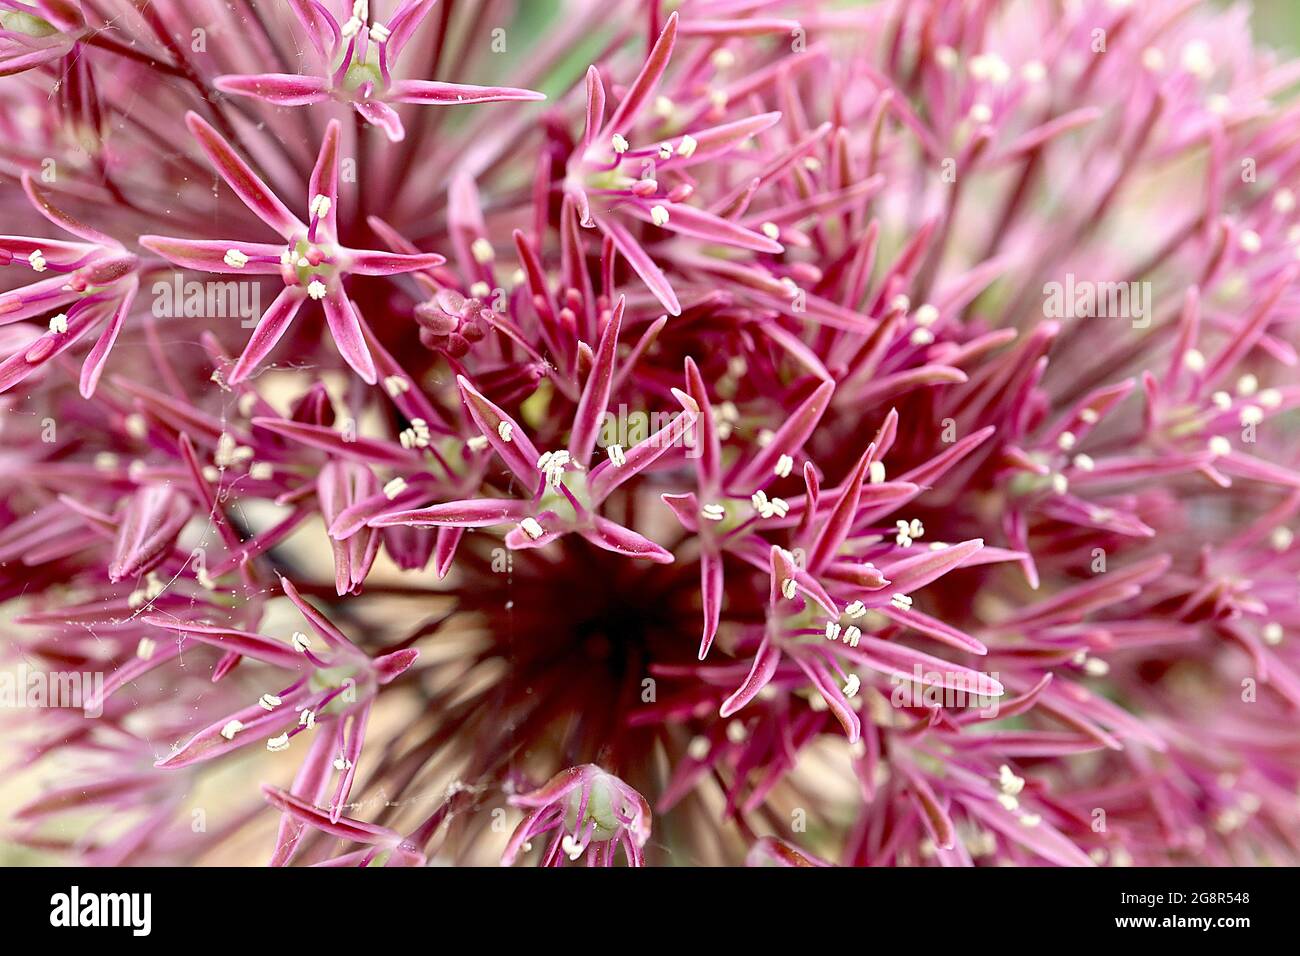 Allium alexeianum / alexejanum umbel sphérique de fleurs cerise en forme d'étoile avec marges roses, pétales très minces, Mai, Angleterre, Royaume-Uni Banque D'Images